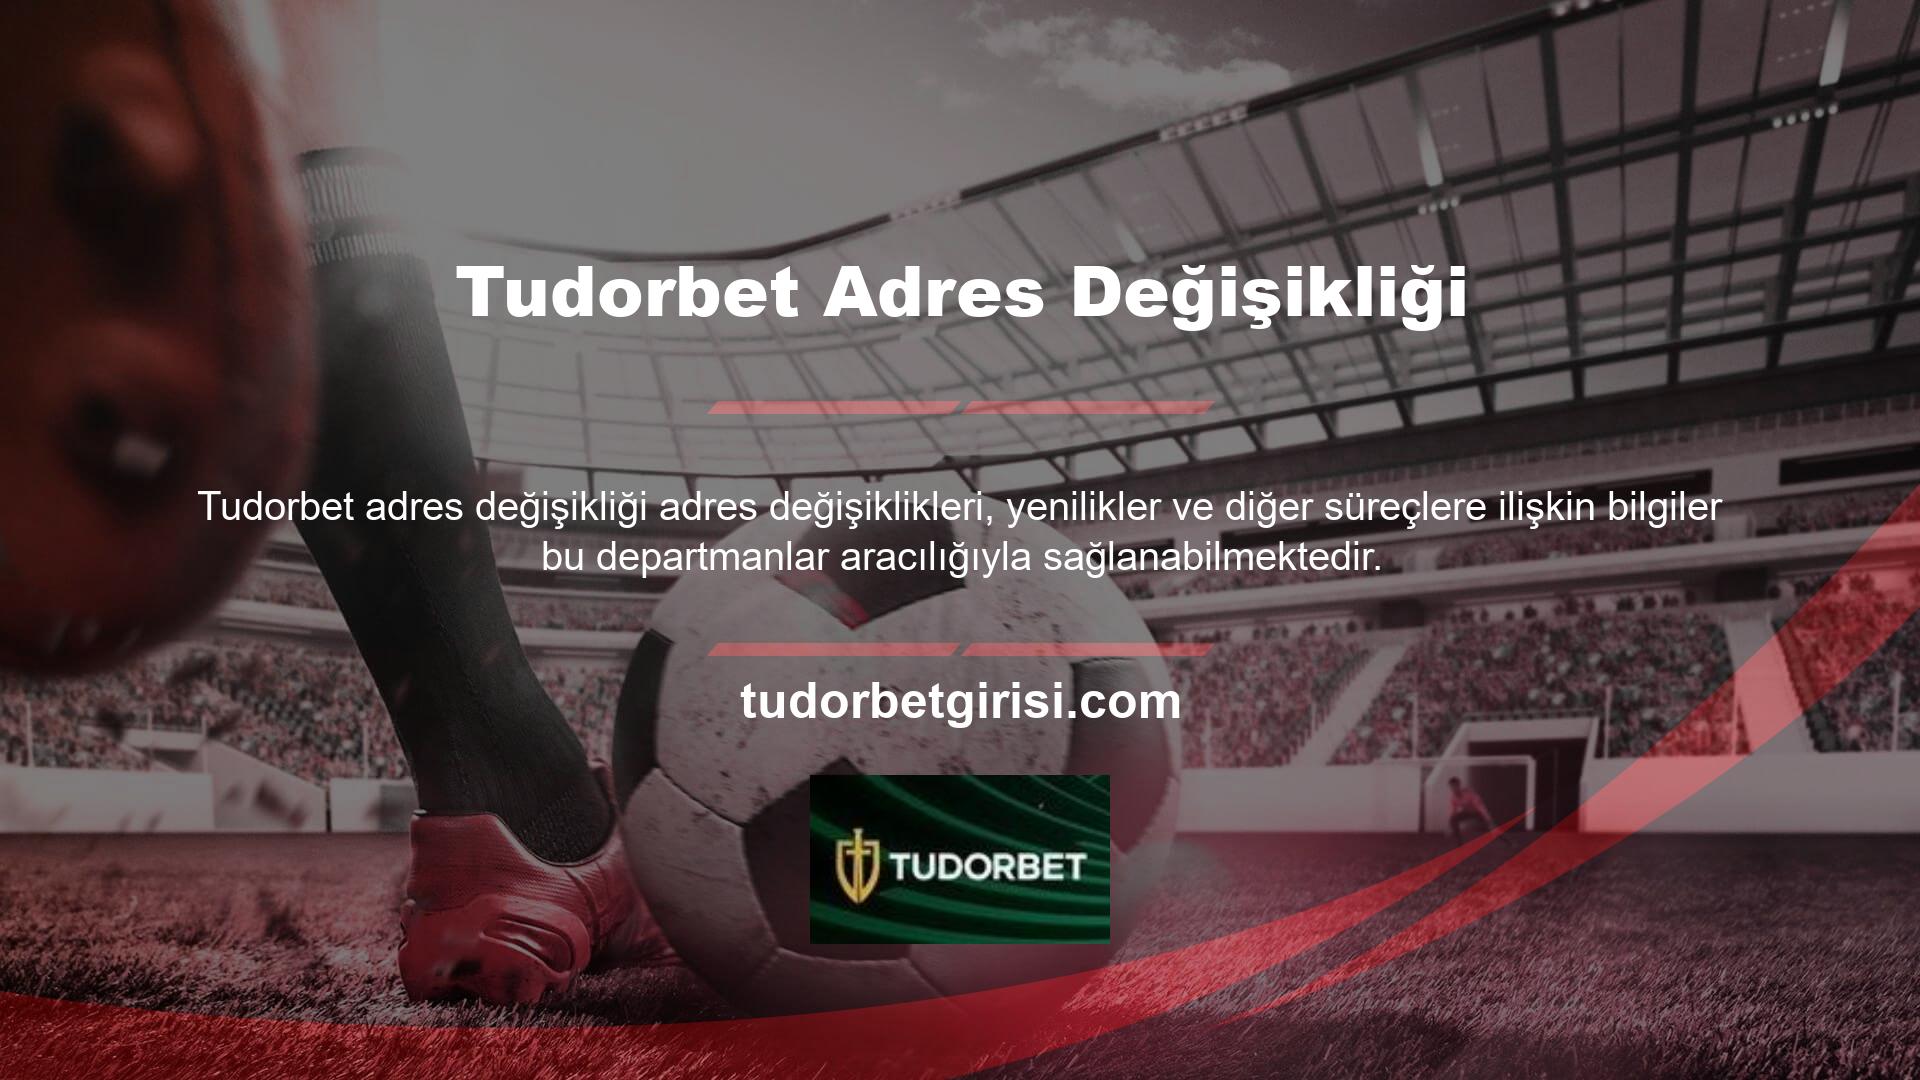 Tudorbet yeni adres sayfasında Türkiye'deki yasadışı casino adresleri için bir destek hattı da bulunuyor